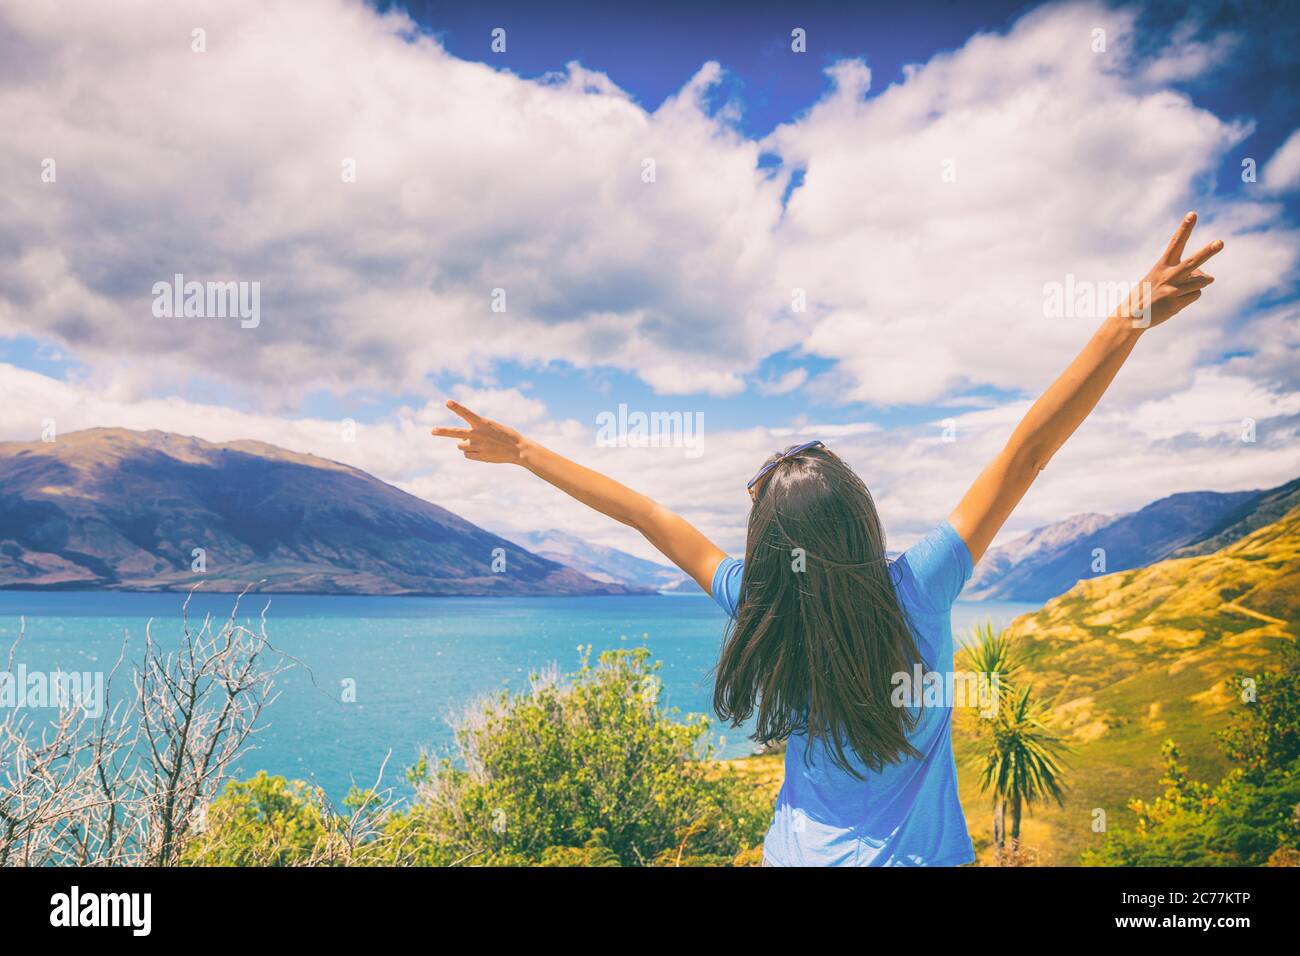 Neuseeland Reise Wanderlust glücklich Tourist Frau mit V-Zeichen Hand up am Wanaka See Landschaft Sommer Reiseziel. Abenteuer junge Mädchen aufgeregt Stockfoto